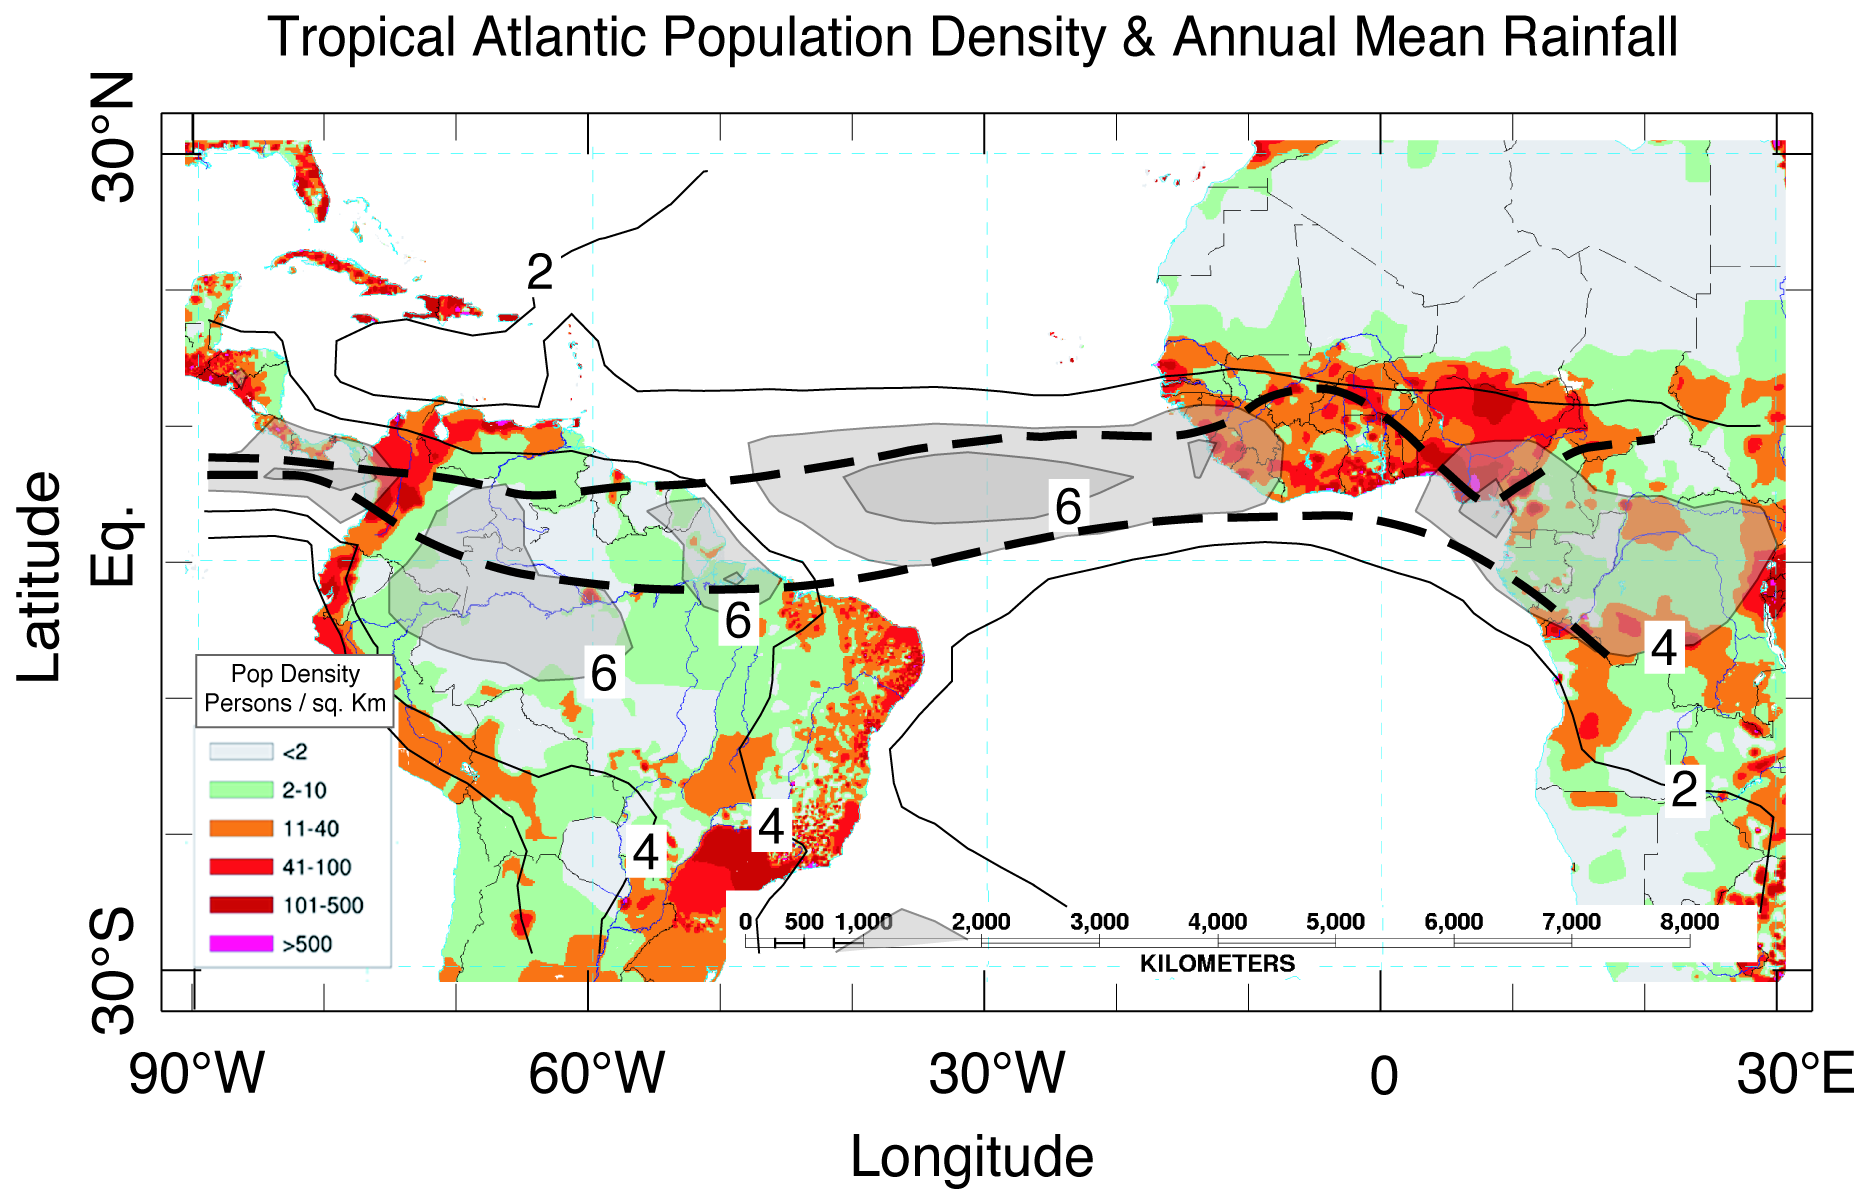 A Zona de Convergência Inter-Tropical (ZCIT) Densidade populacional do Atlântico Tropical e precipitação média anual (from